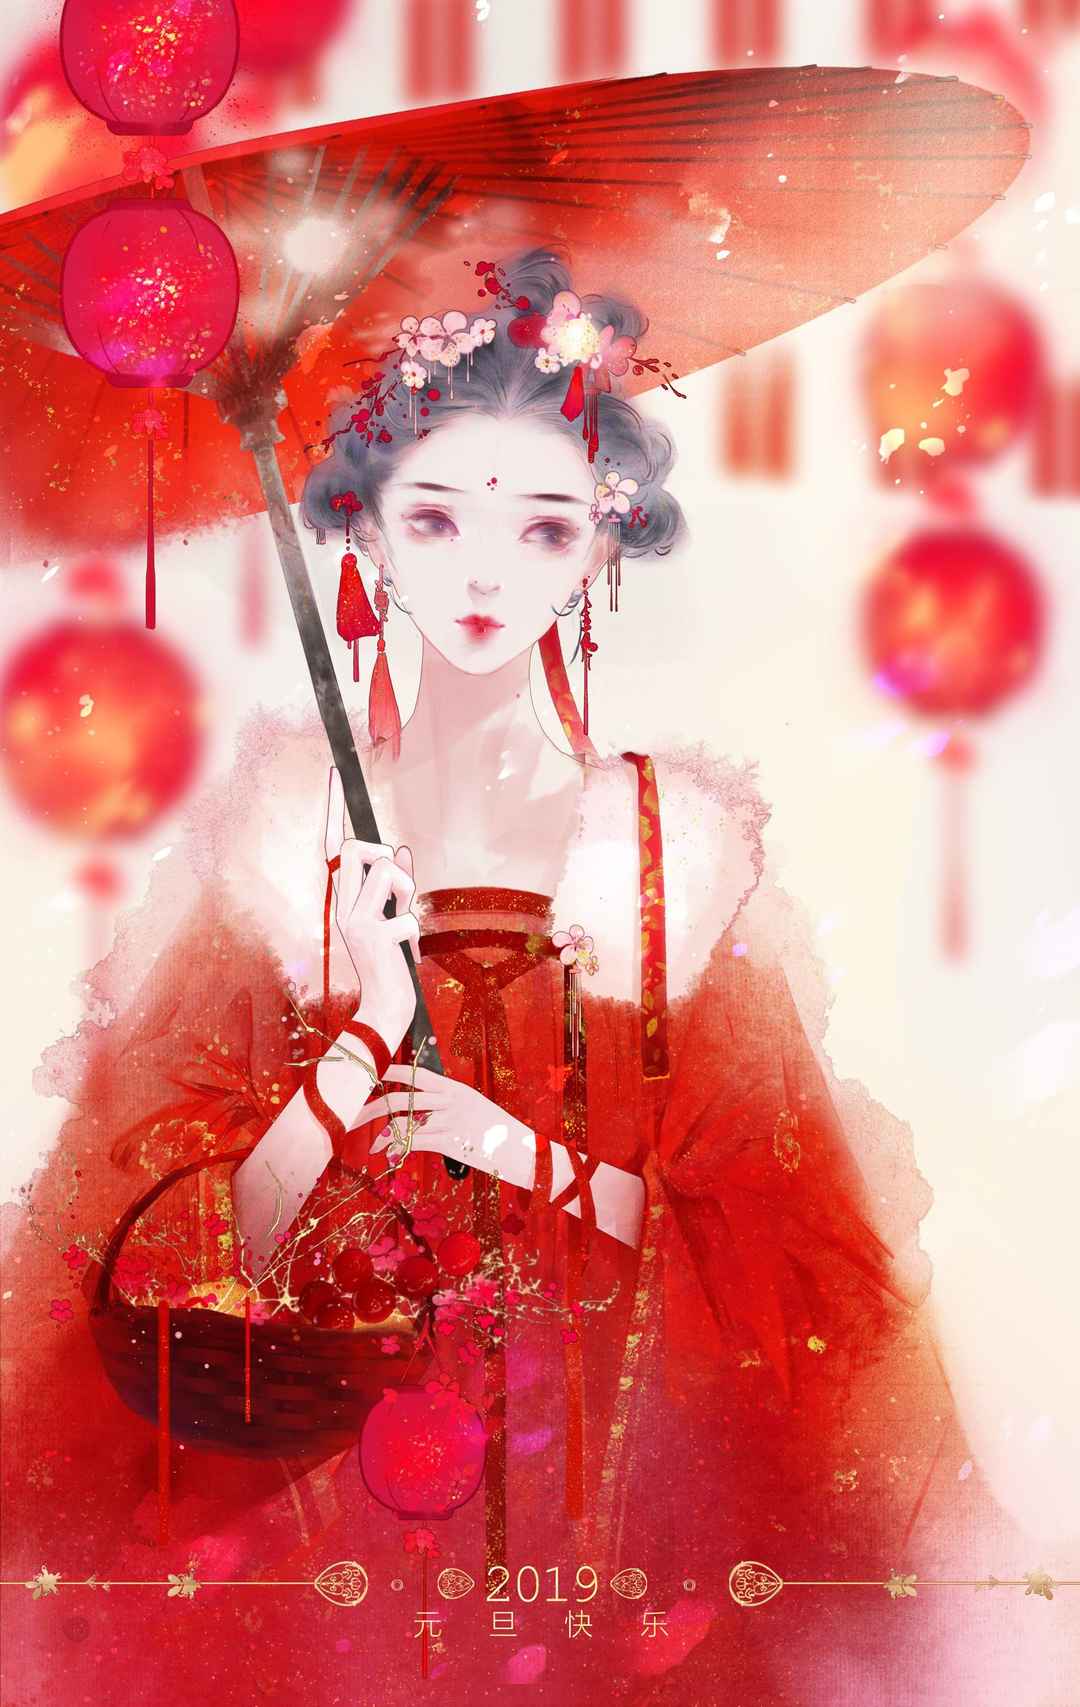 红红的中国风画风的动漫女孩手机壁纸看着就很吉利套图1